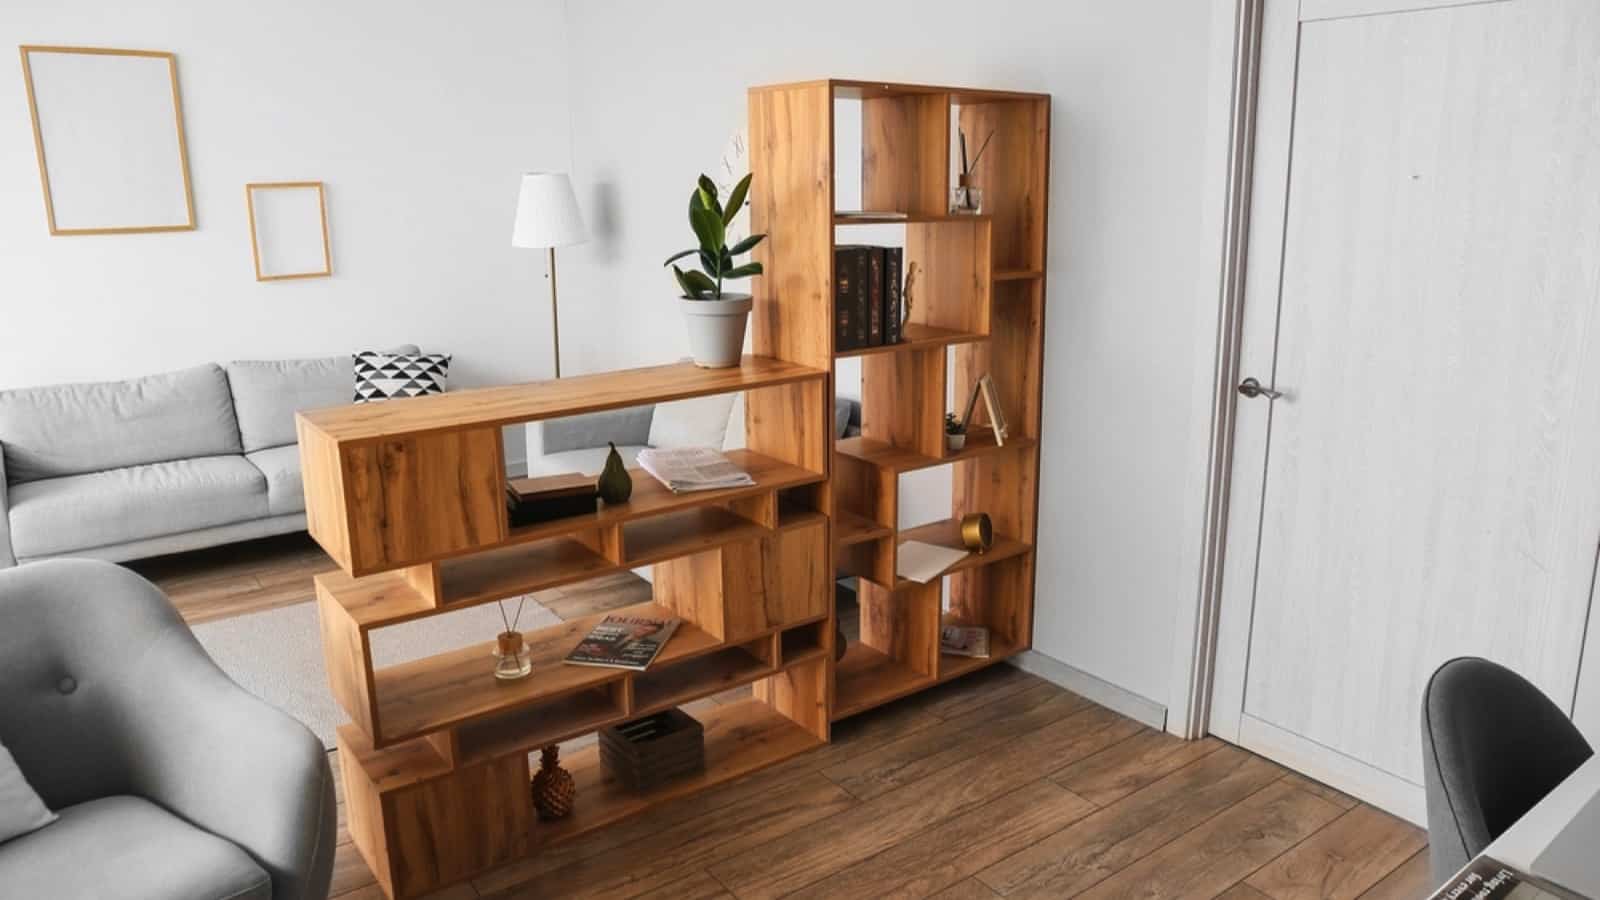 Wooden shelf